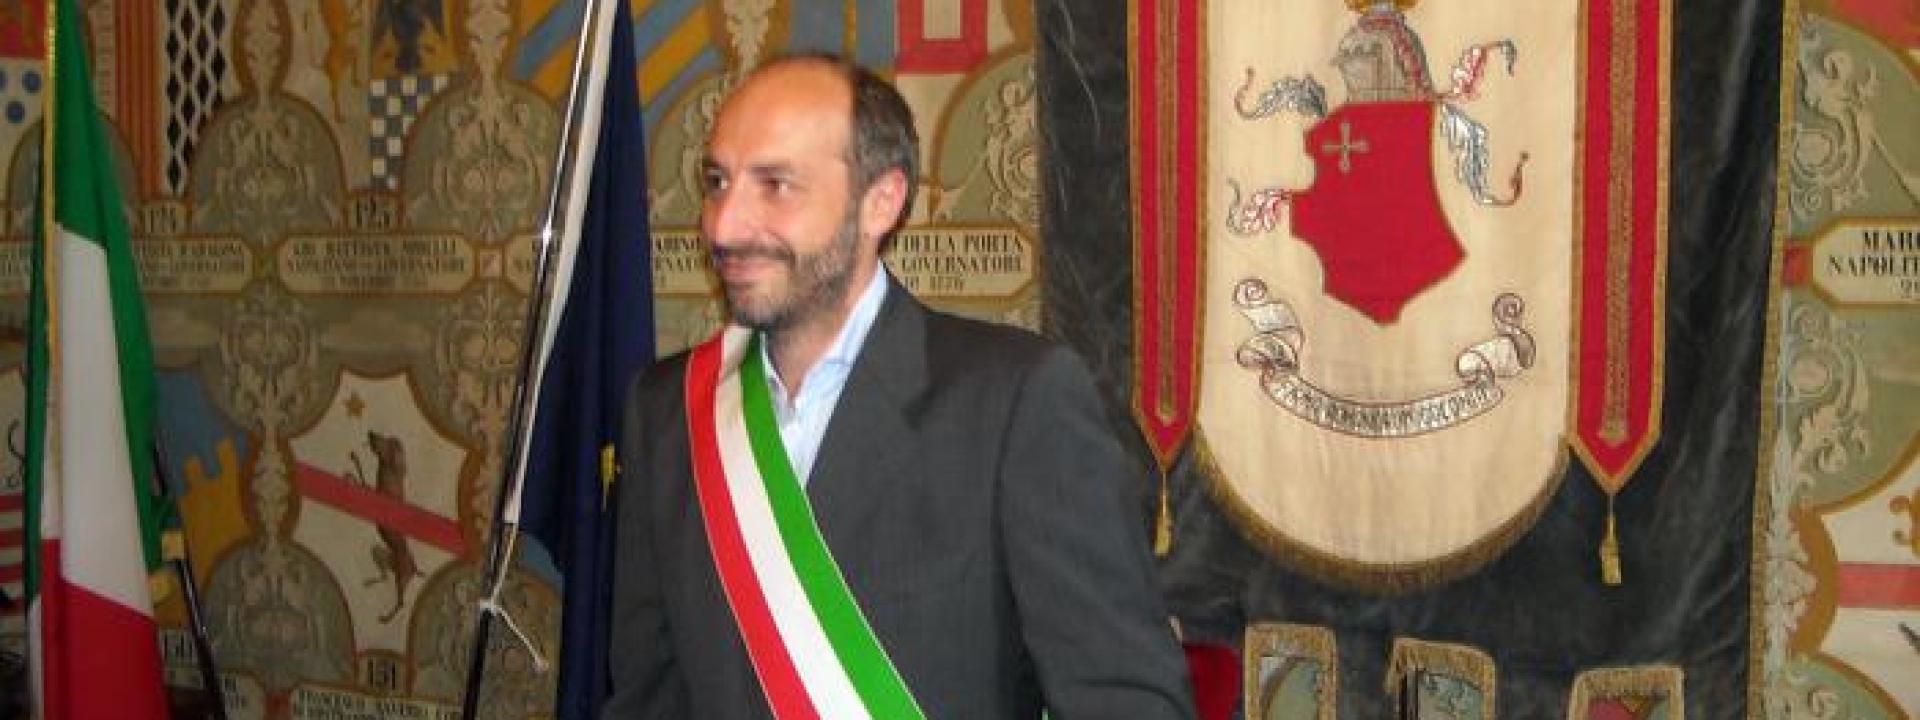 Marche - Politiche, anche il sindaco di Fermo si chiama fuori